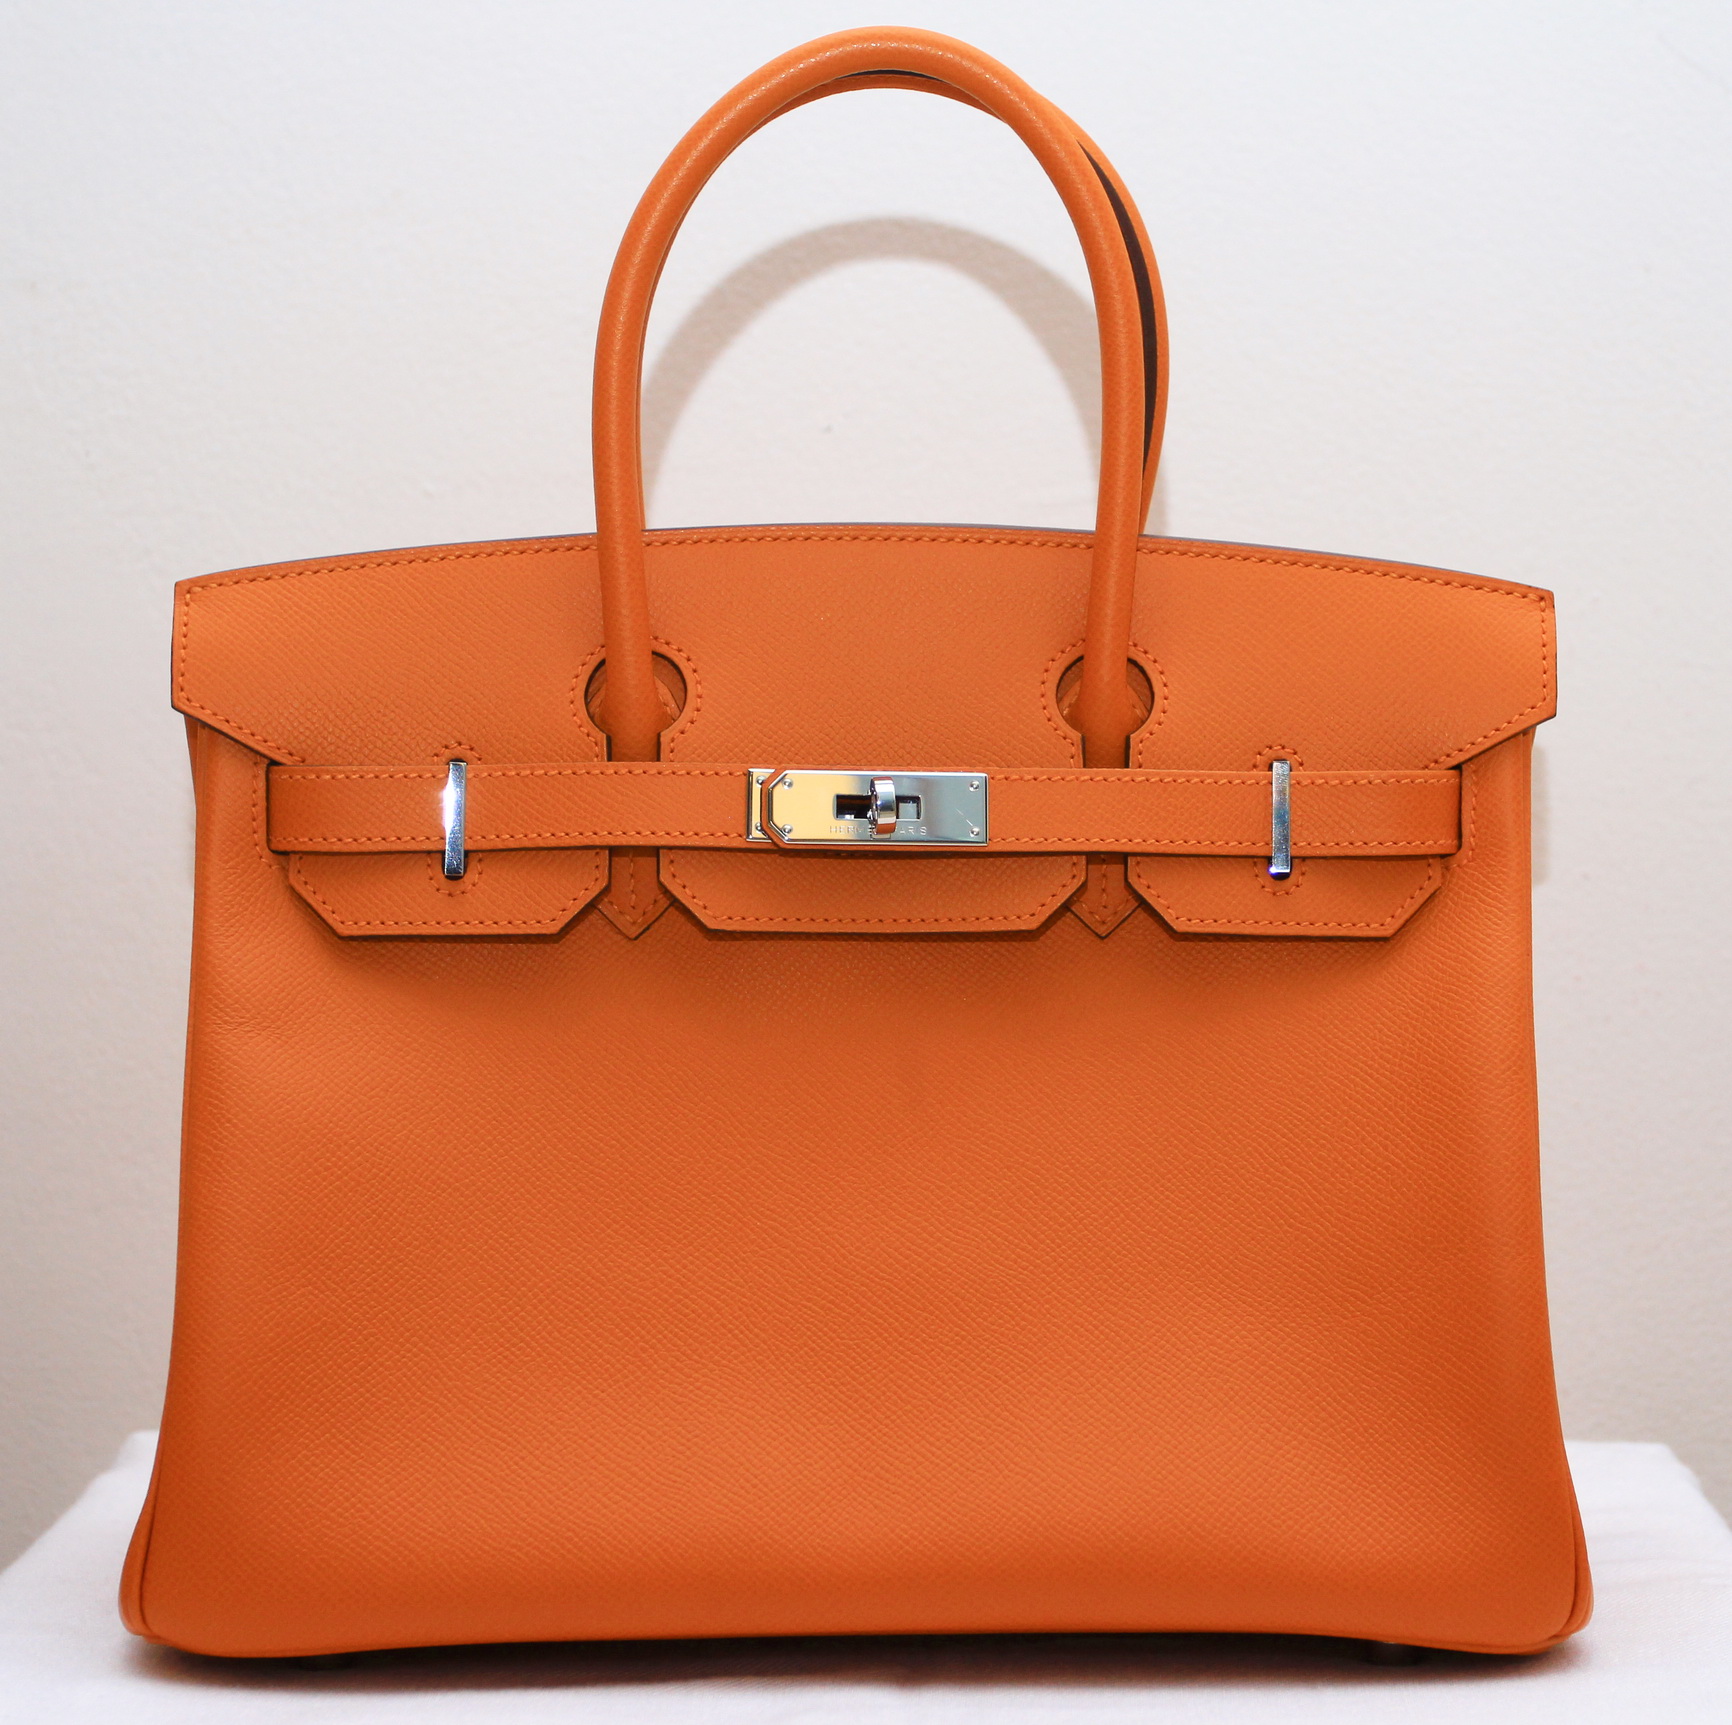 HERMÈS Birkin 30 Orange epsom PHW, N stamped MINT condition -SOLD- – Ciro&#39;s Closet Luxury ...